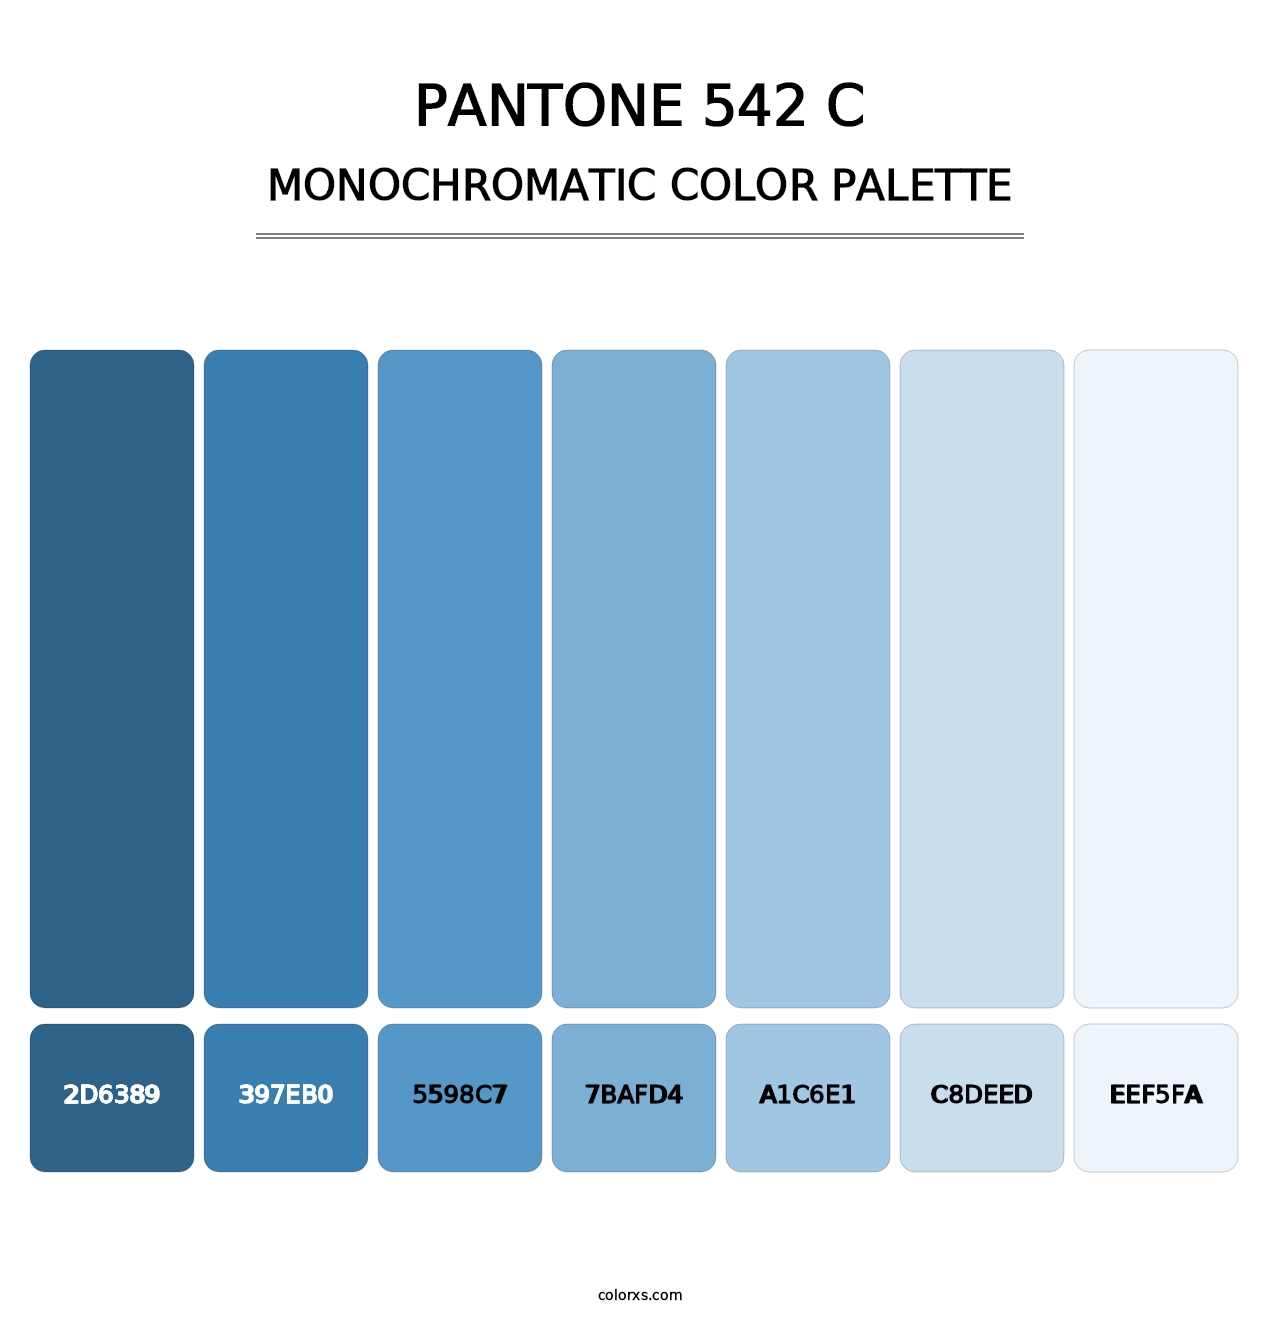 PANTONE 542 C - Monochromatic Color Palette